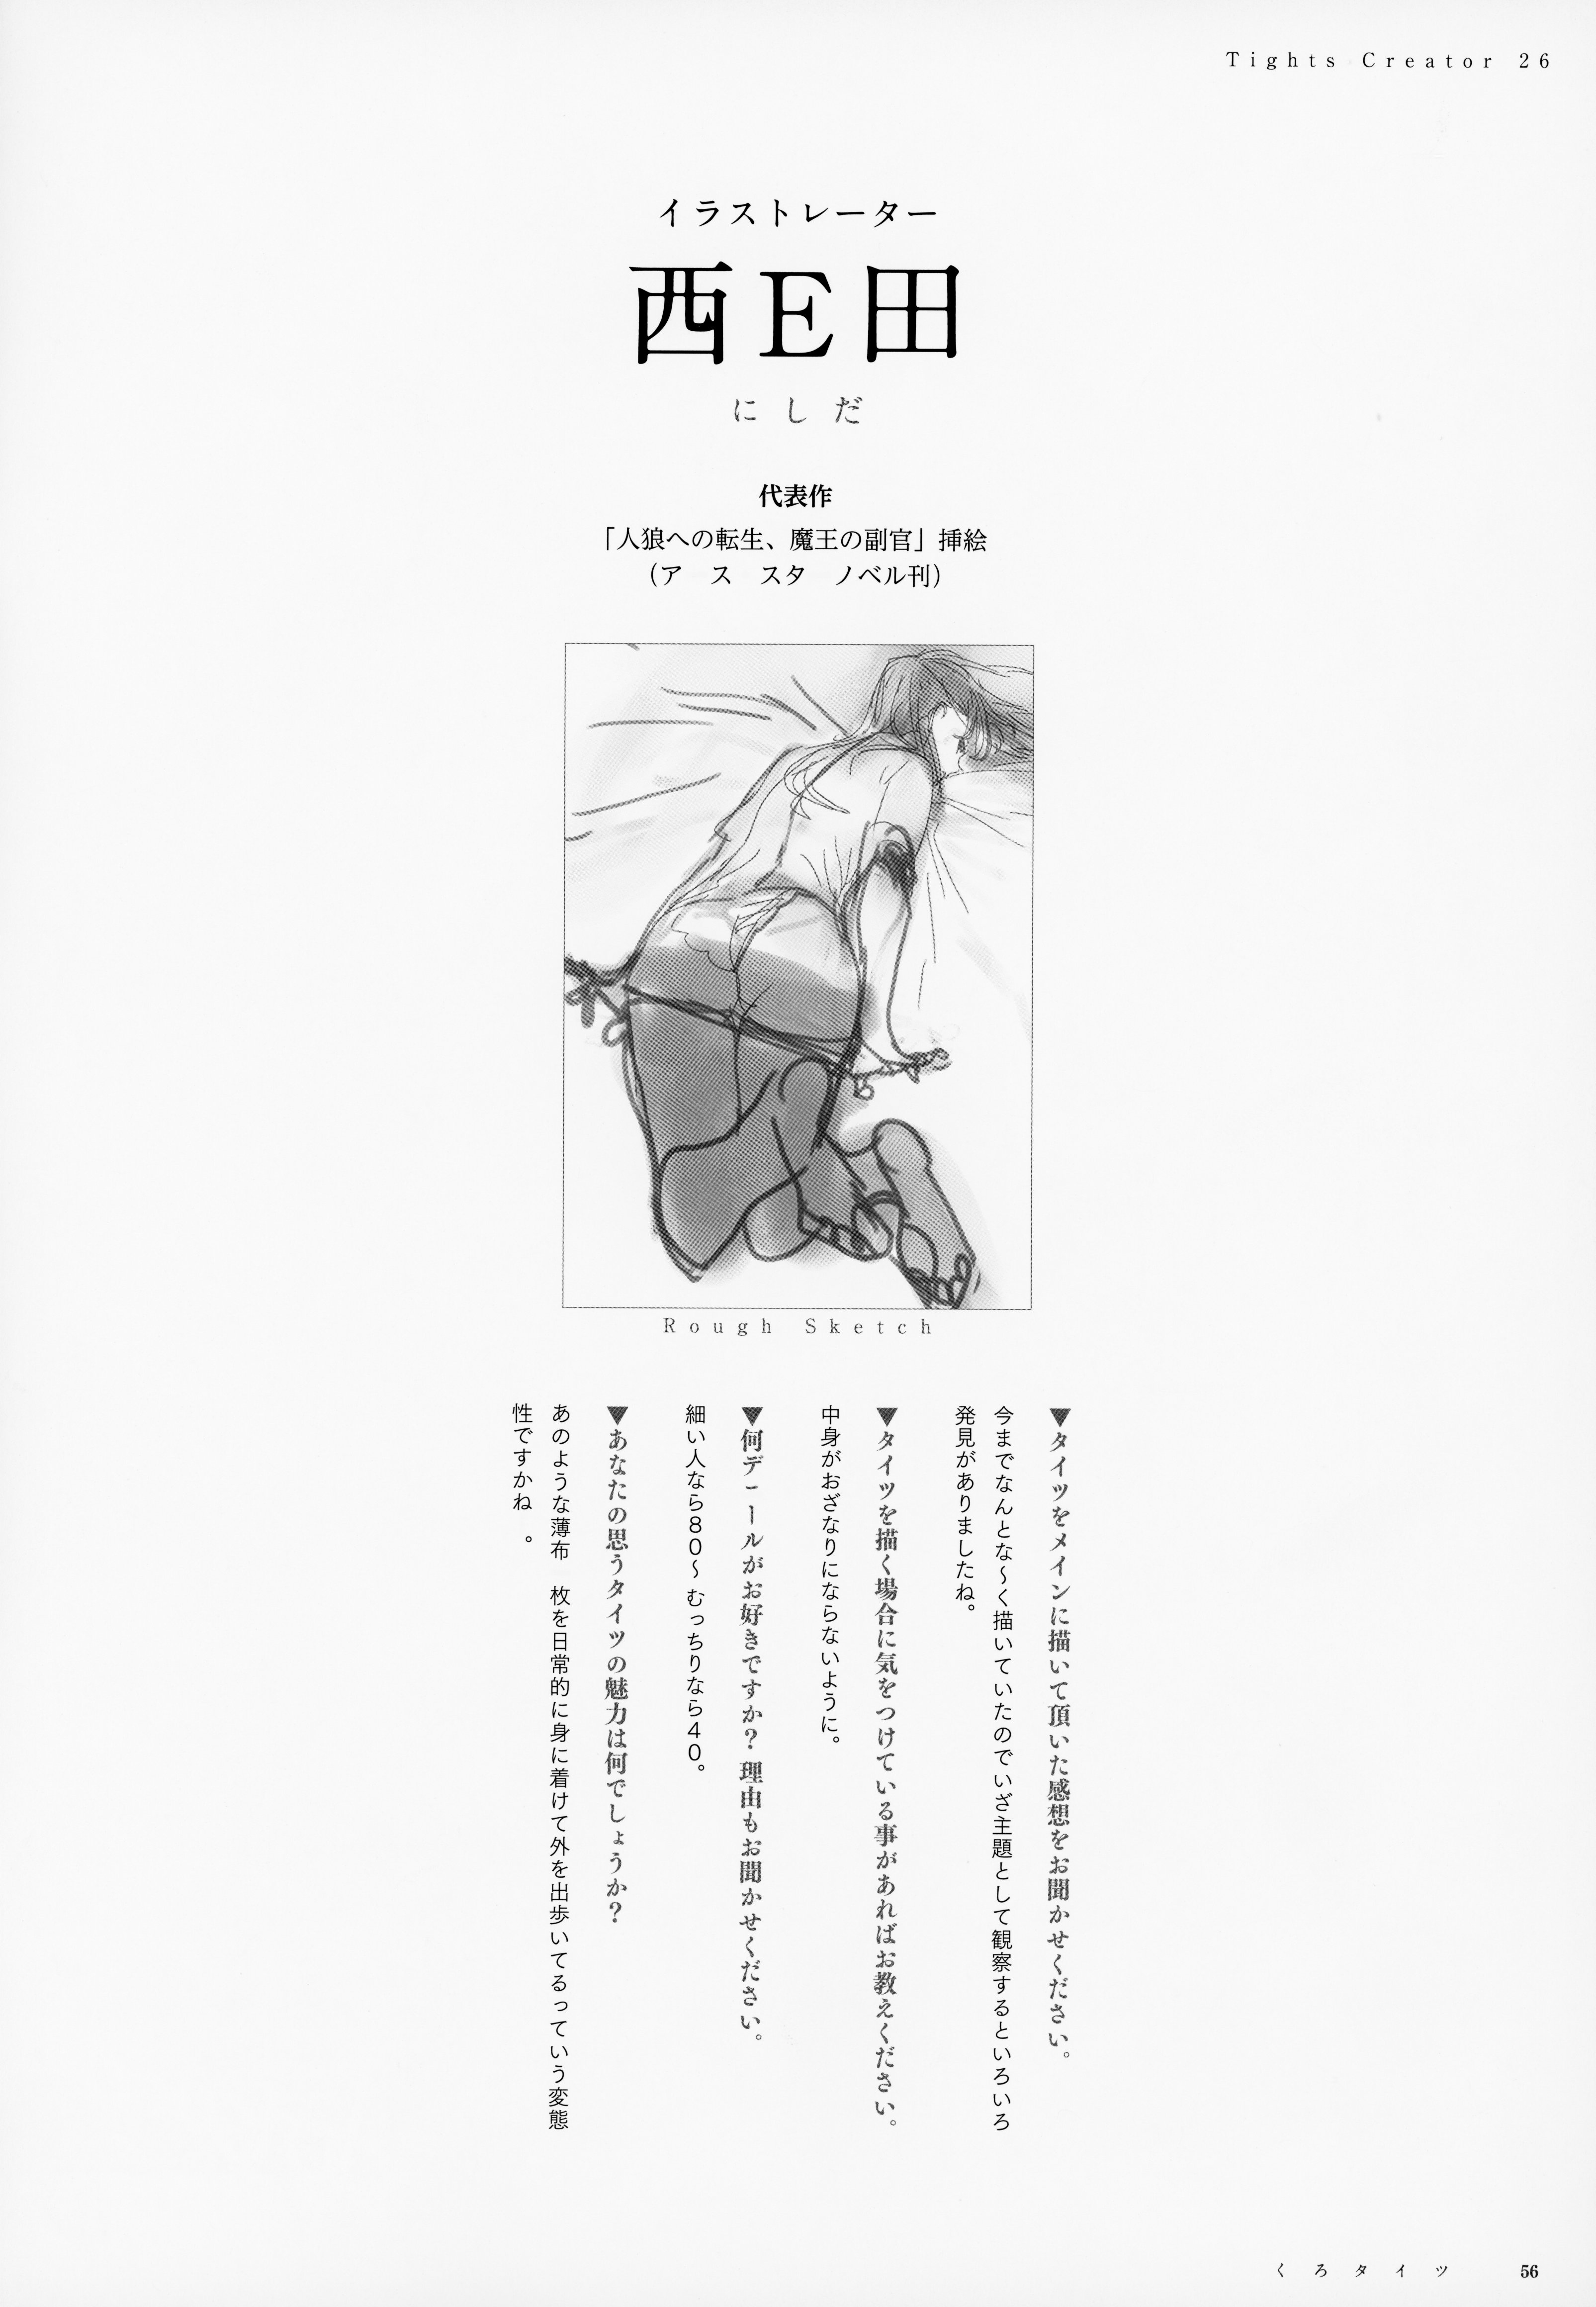 【オリジナル】豪華作家陣が描く、黒タイツイラスト総集本！の画像56枚目